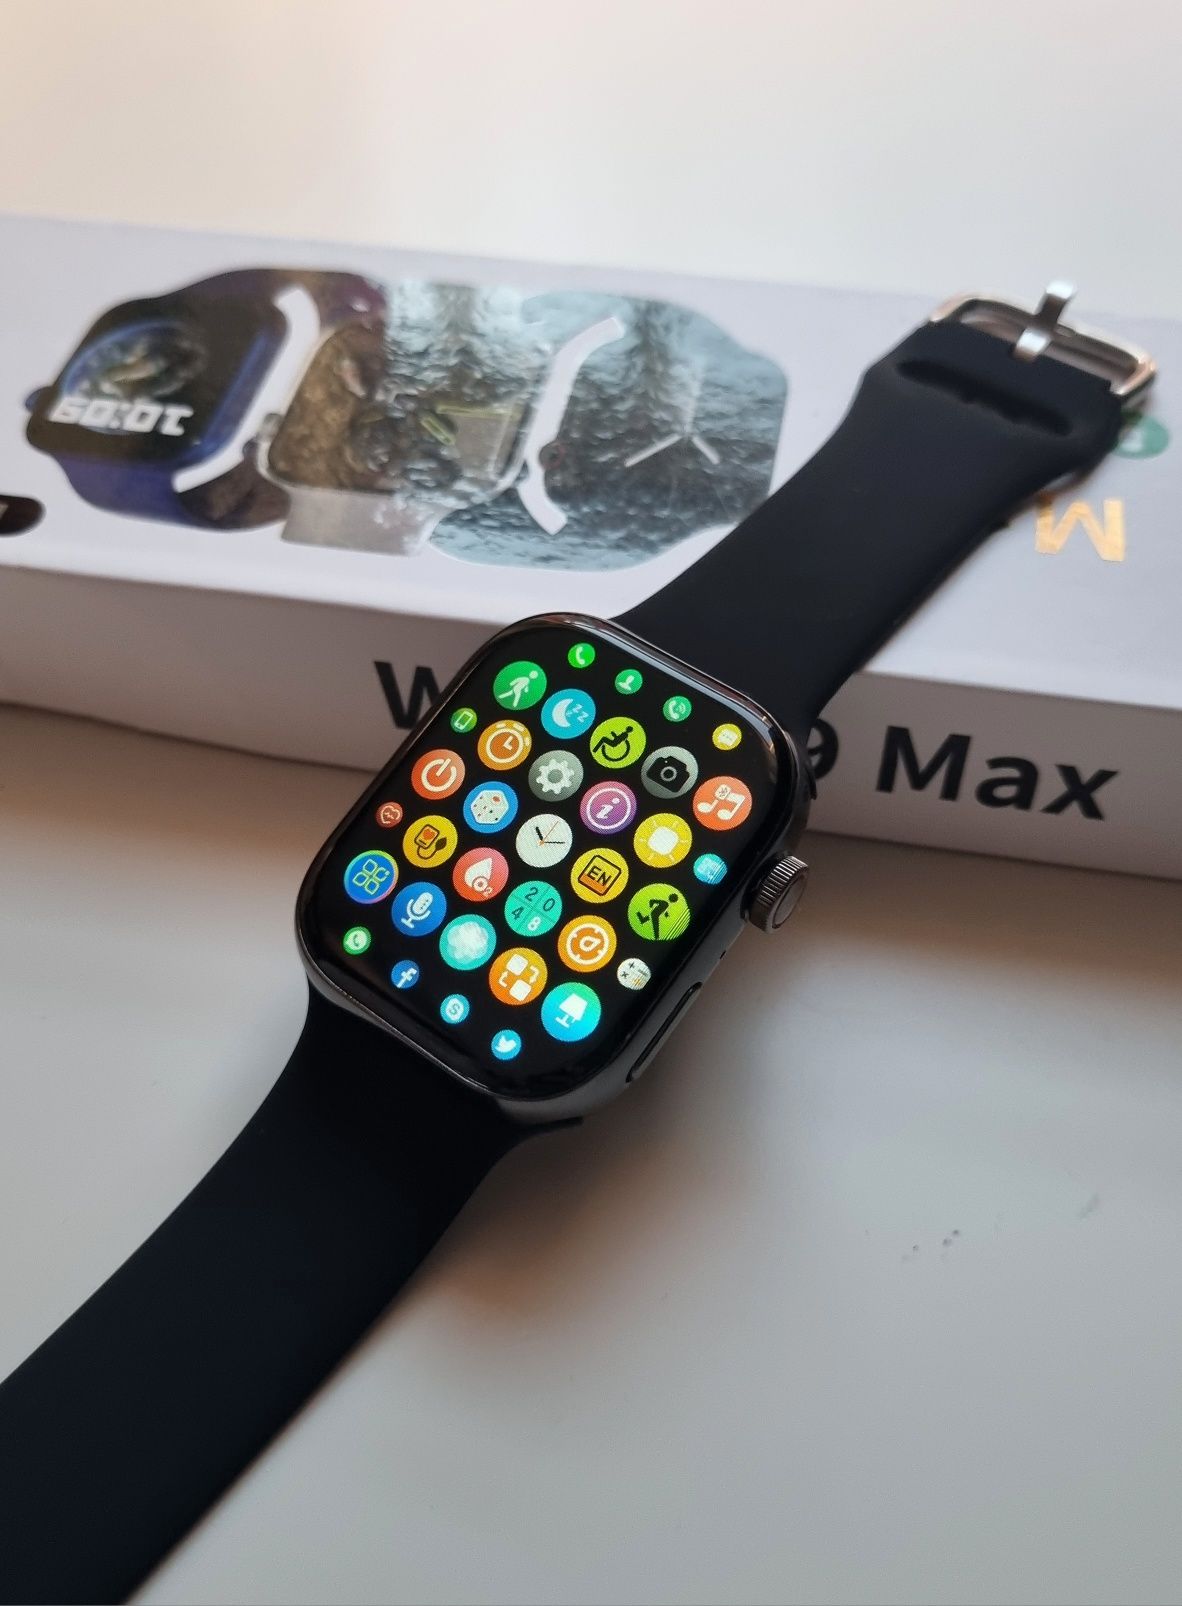 Smartwatch 9 Max czarny